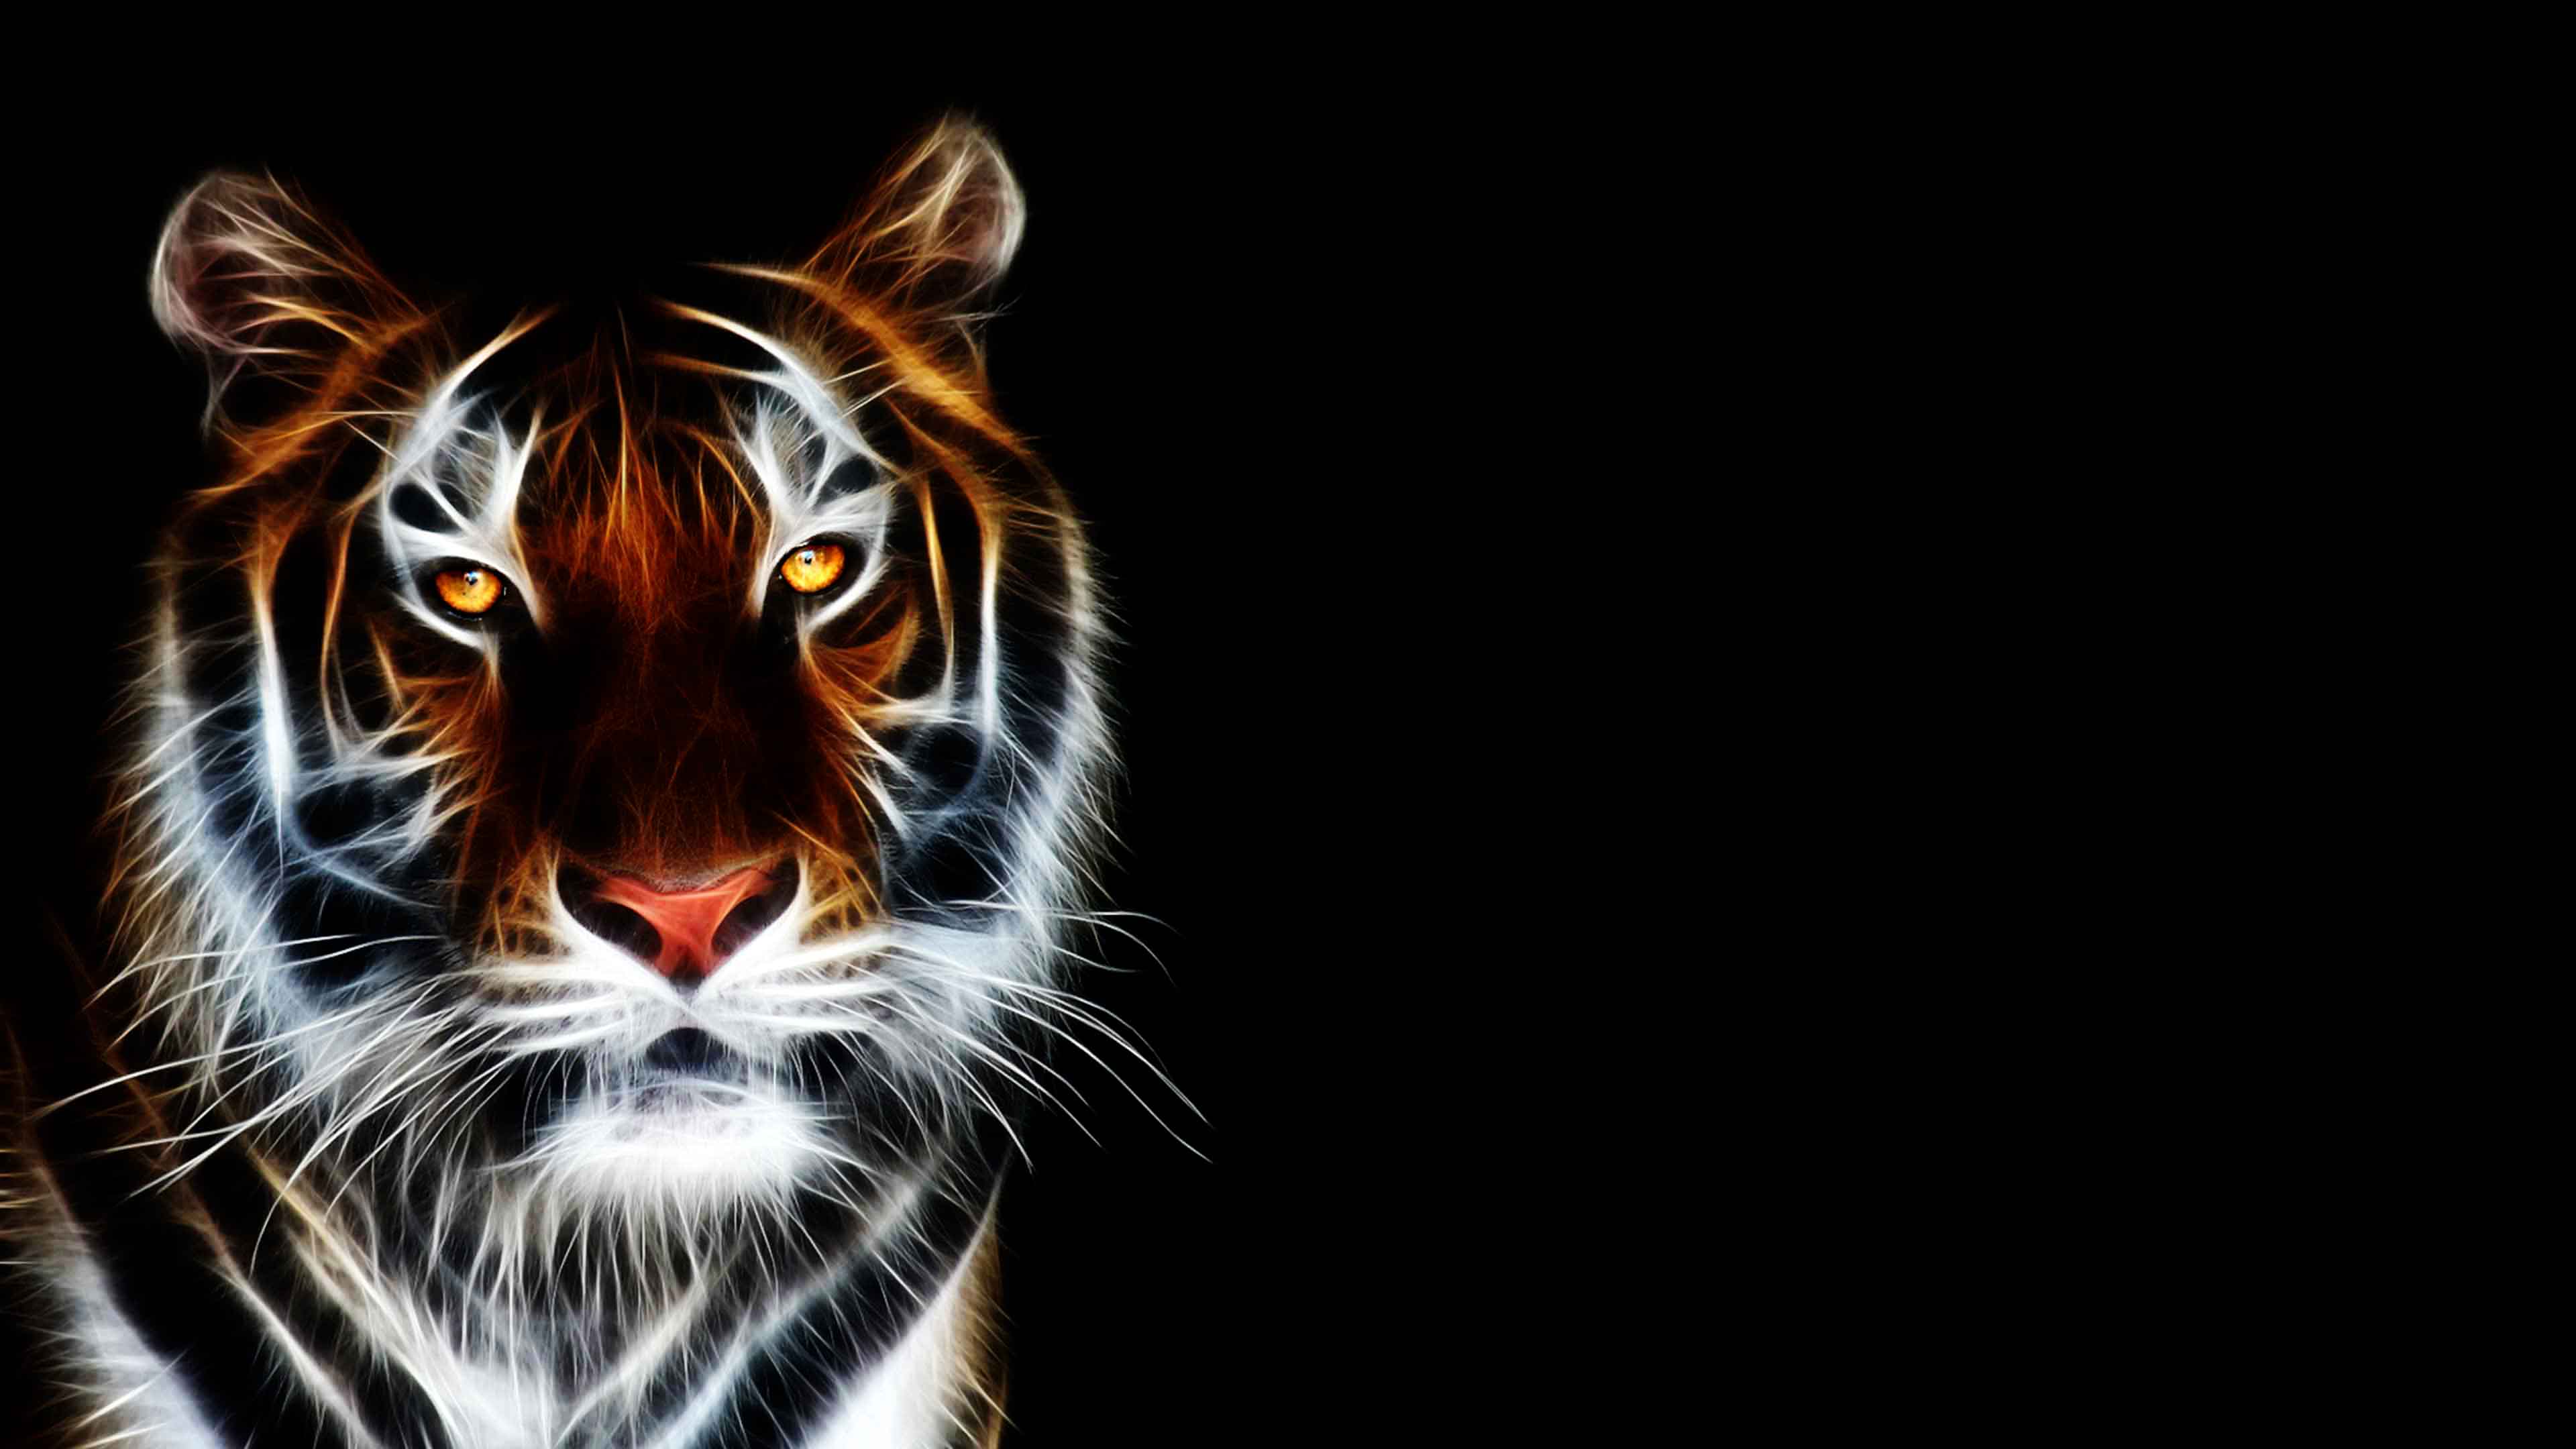 Tiger Wallpaper 4k 4usky